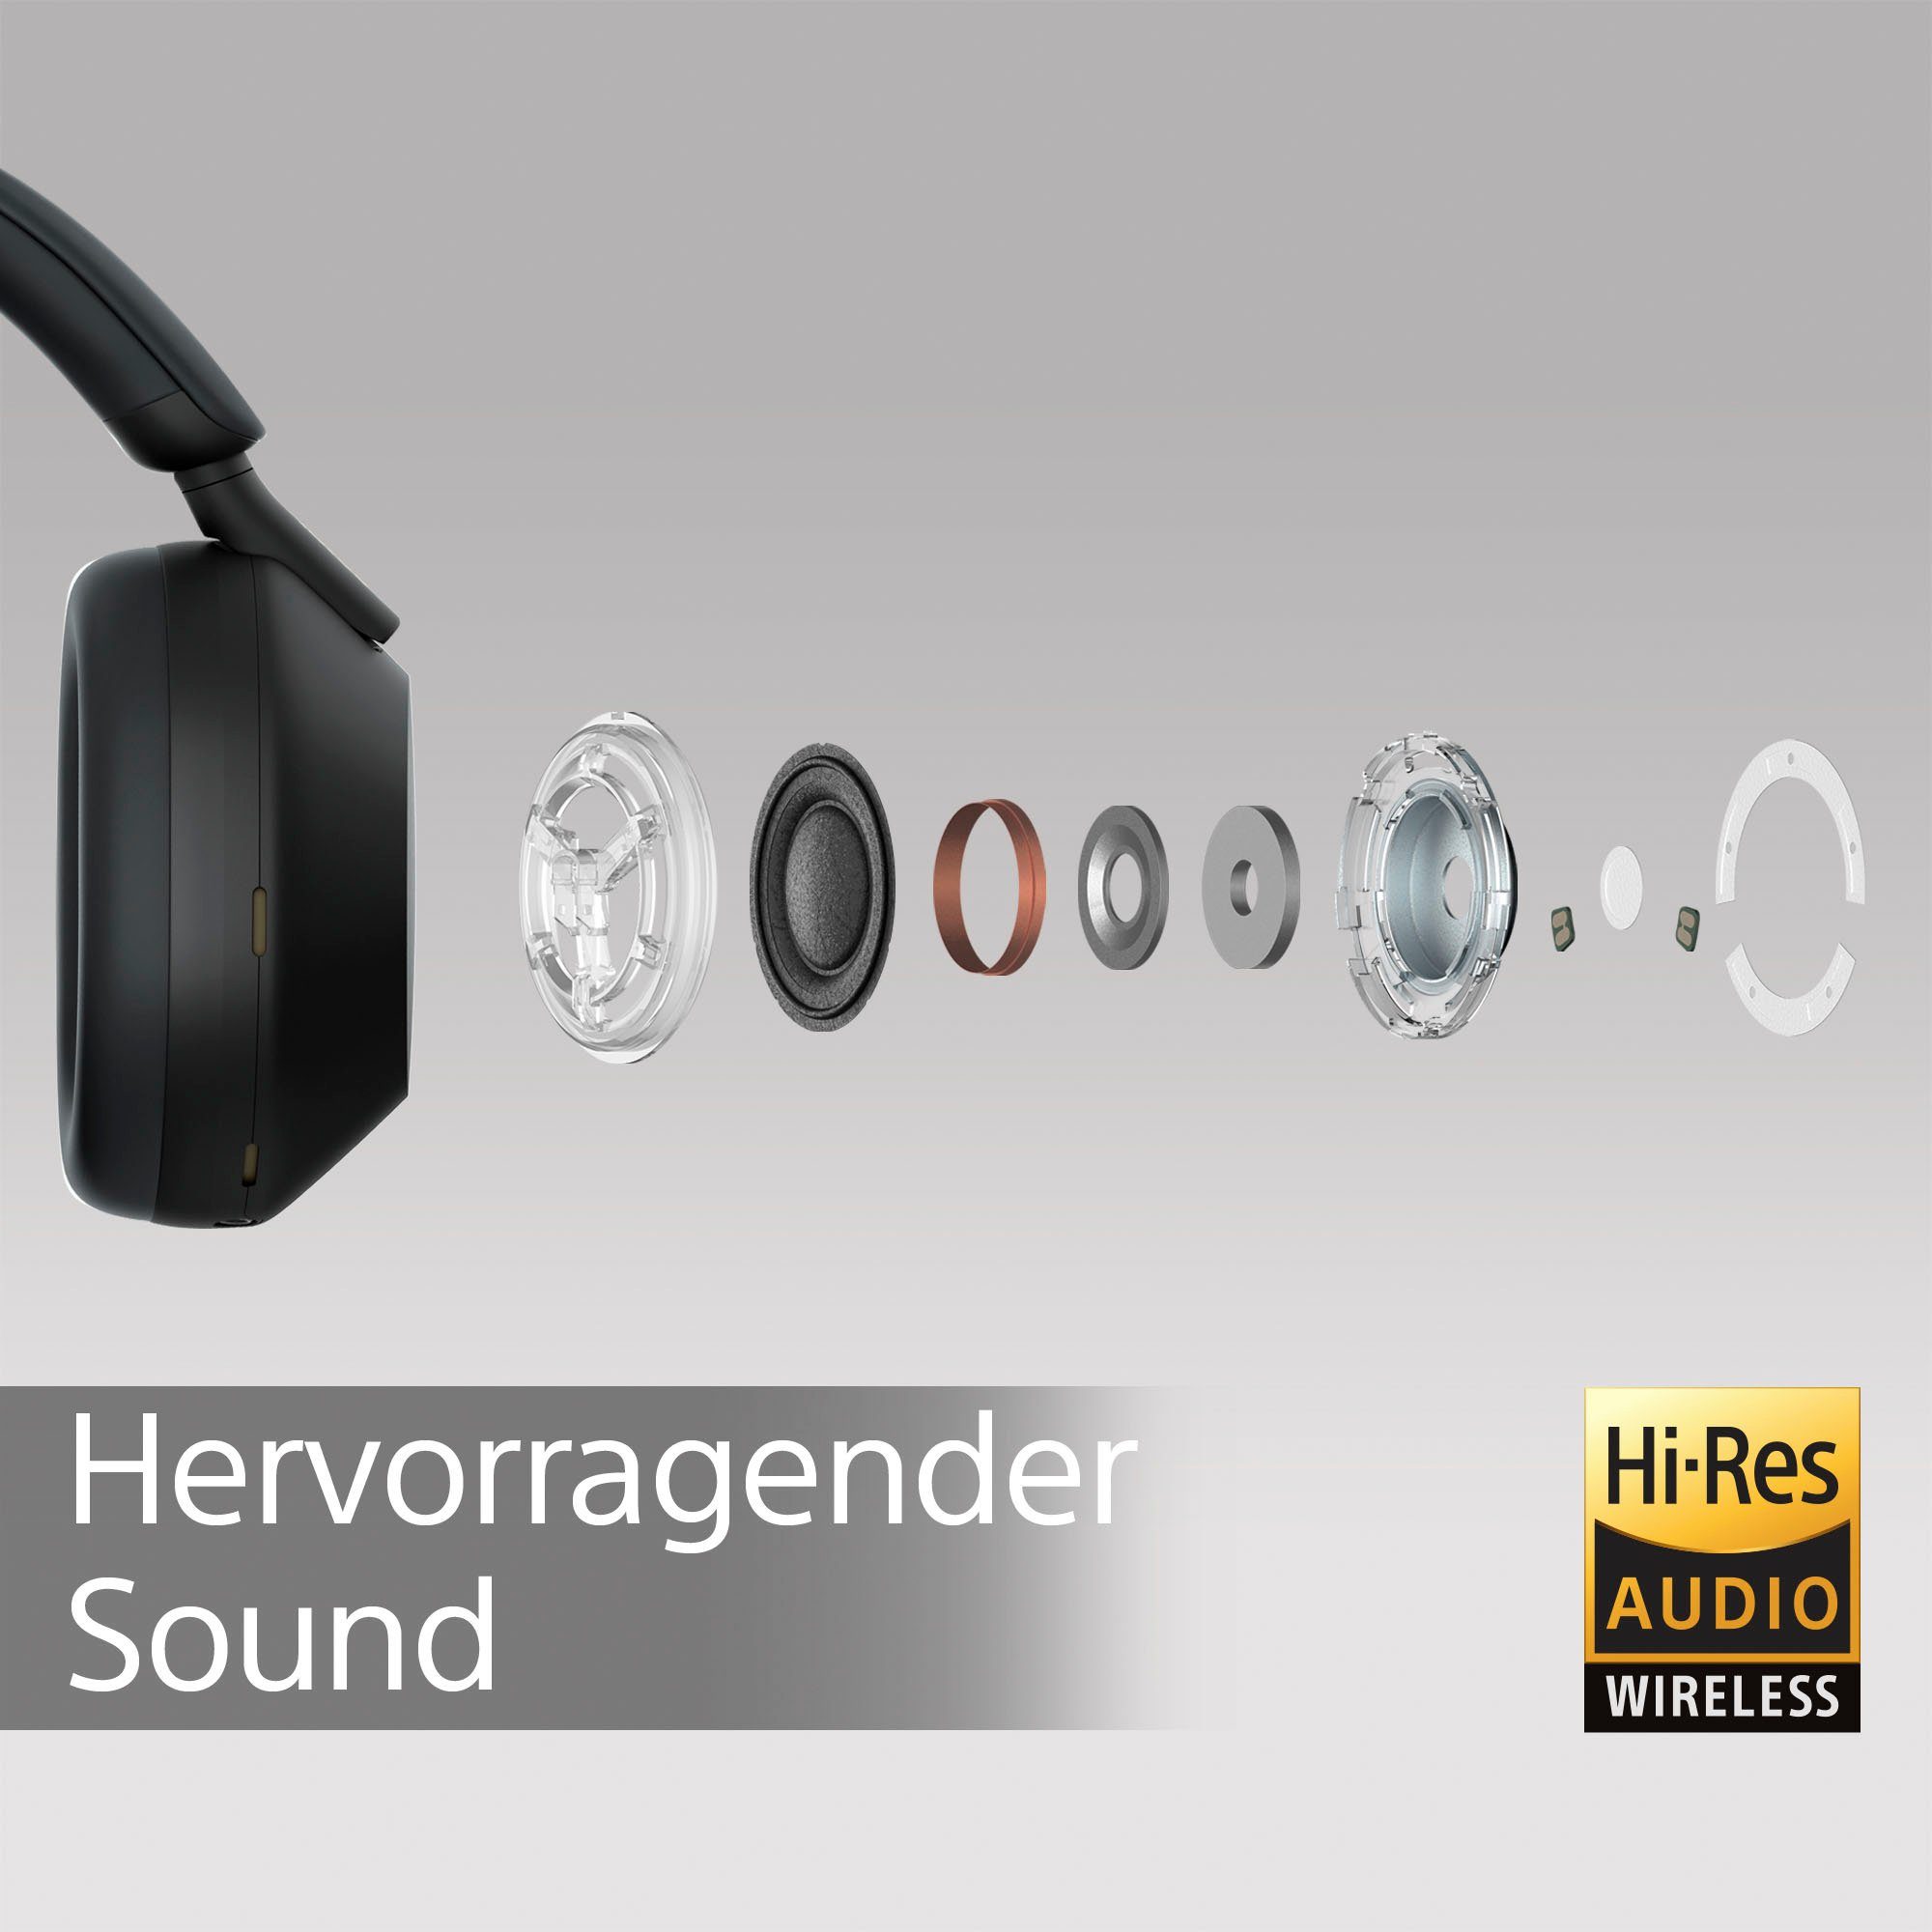 Schwarz WH1000XM5 Hi-Res, kabelloser Sony (Freisprechfunktion, Kopfhörer Multi-Point-Verbindung, Rauschunterdrückung, Noise-Cancelling, Sprachsteuerung)